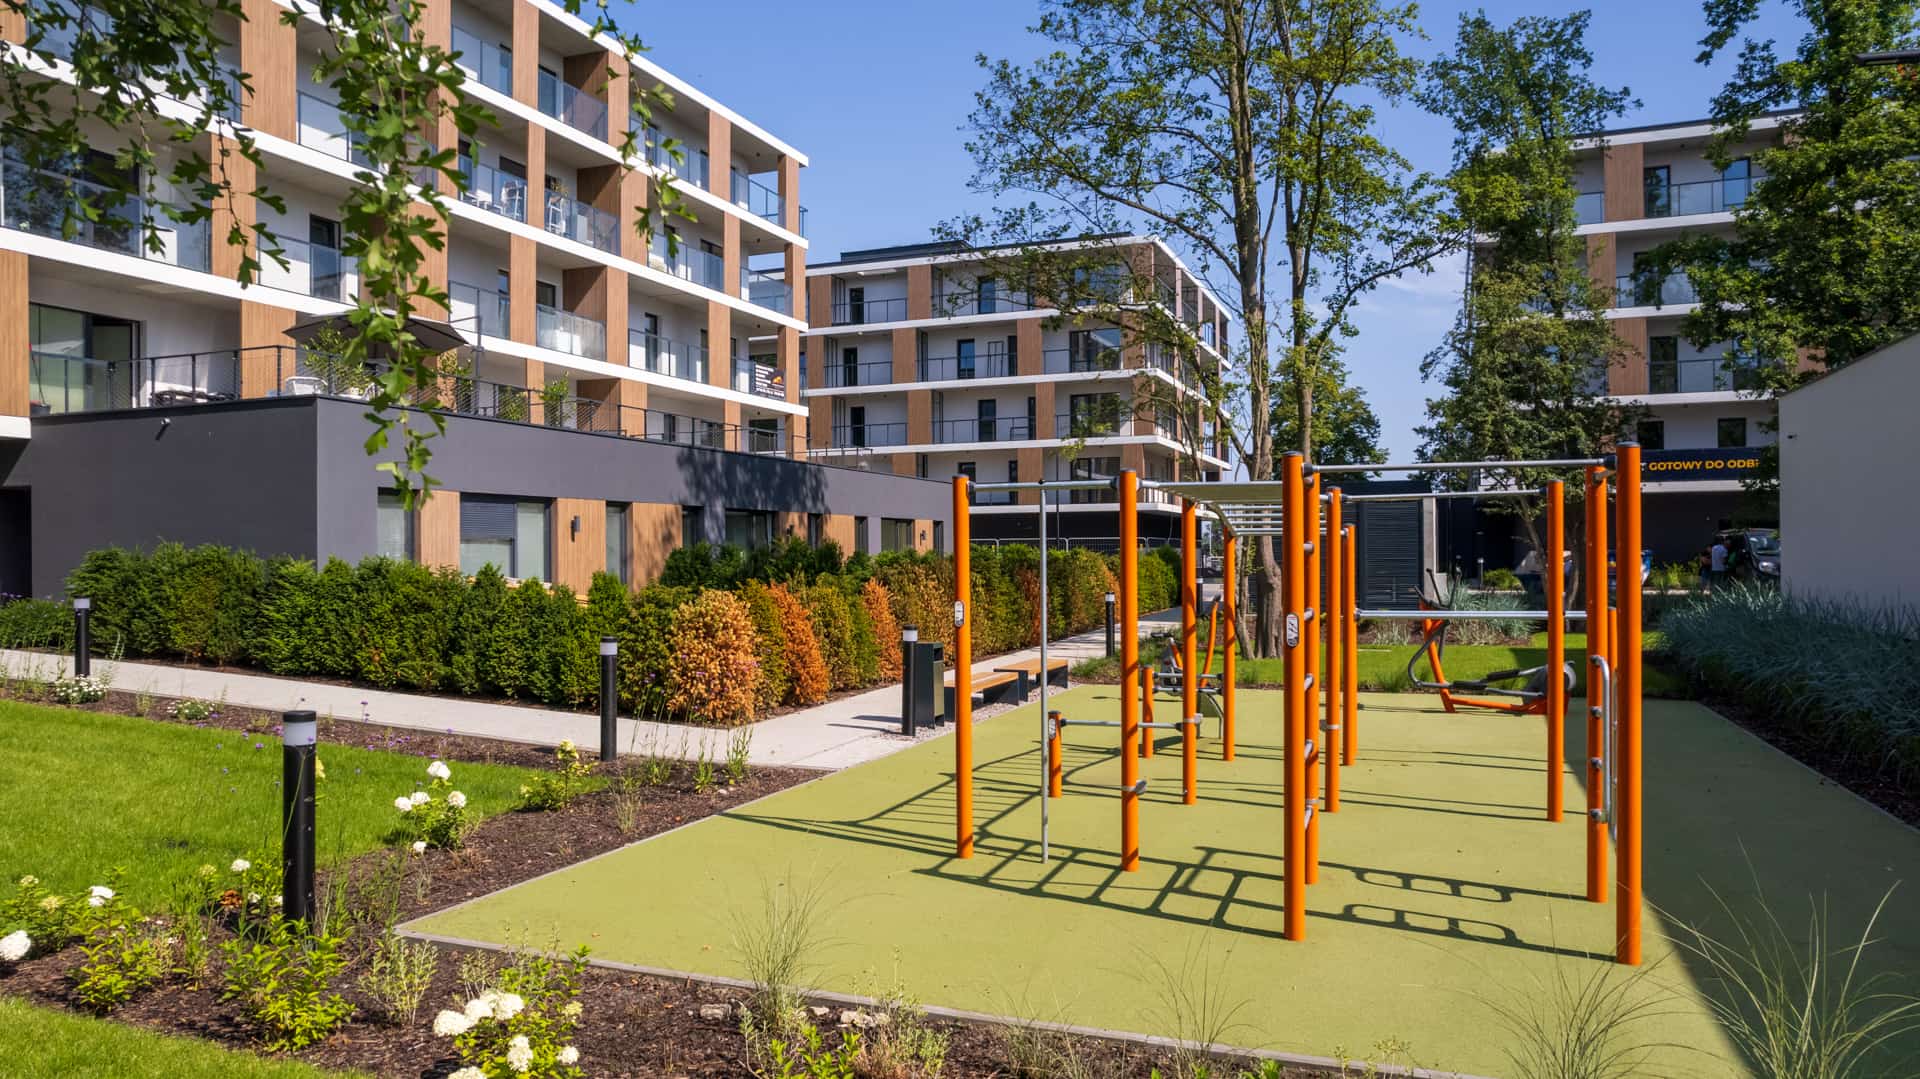 Victoria, Dziennik budowy - Victoria Apartments w Szczecinie - lipiec 2021